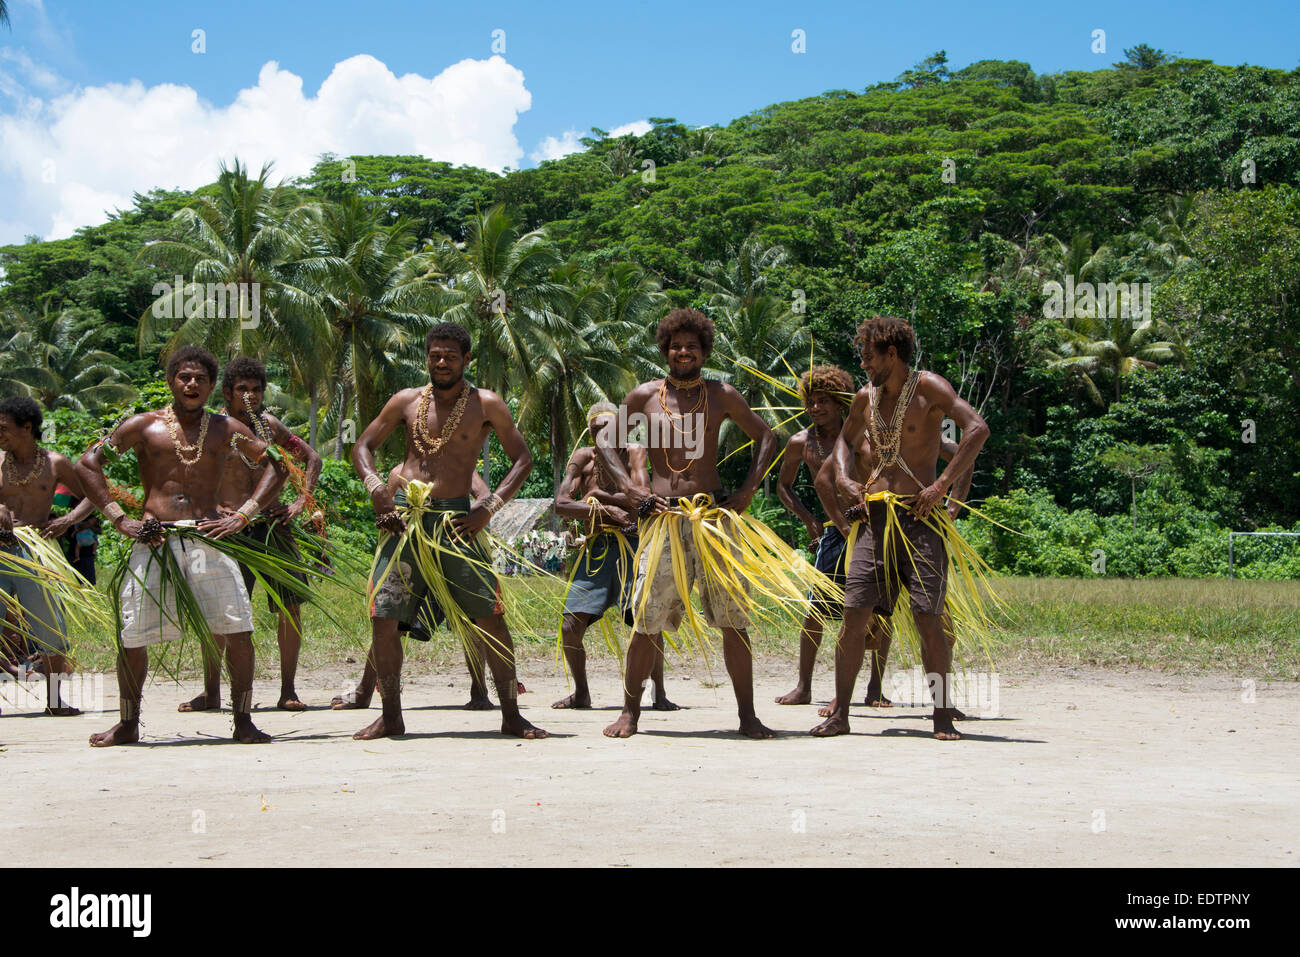 Cultura de las islas salomón fotografías e imágenes de alta resolución -  Página 2 - Alamy